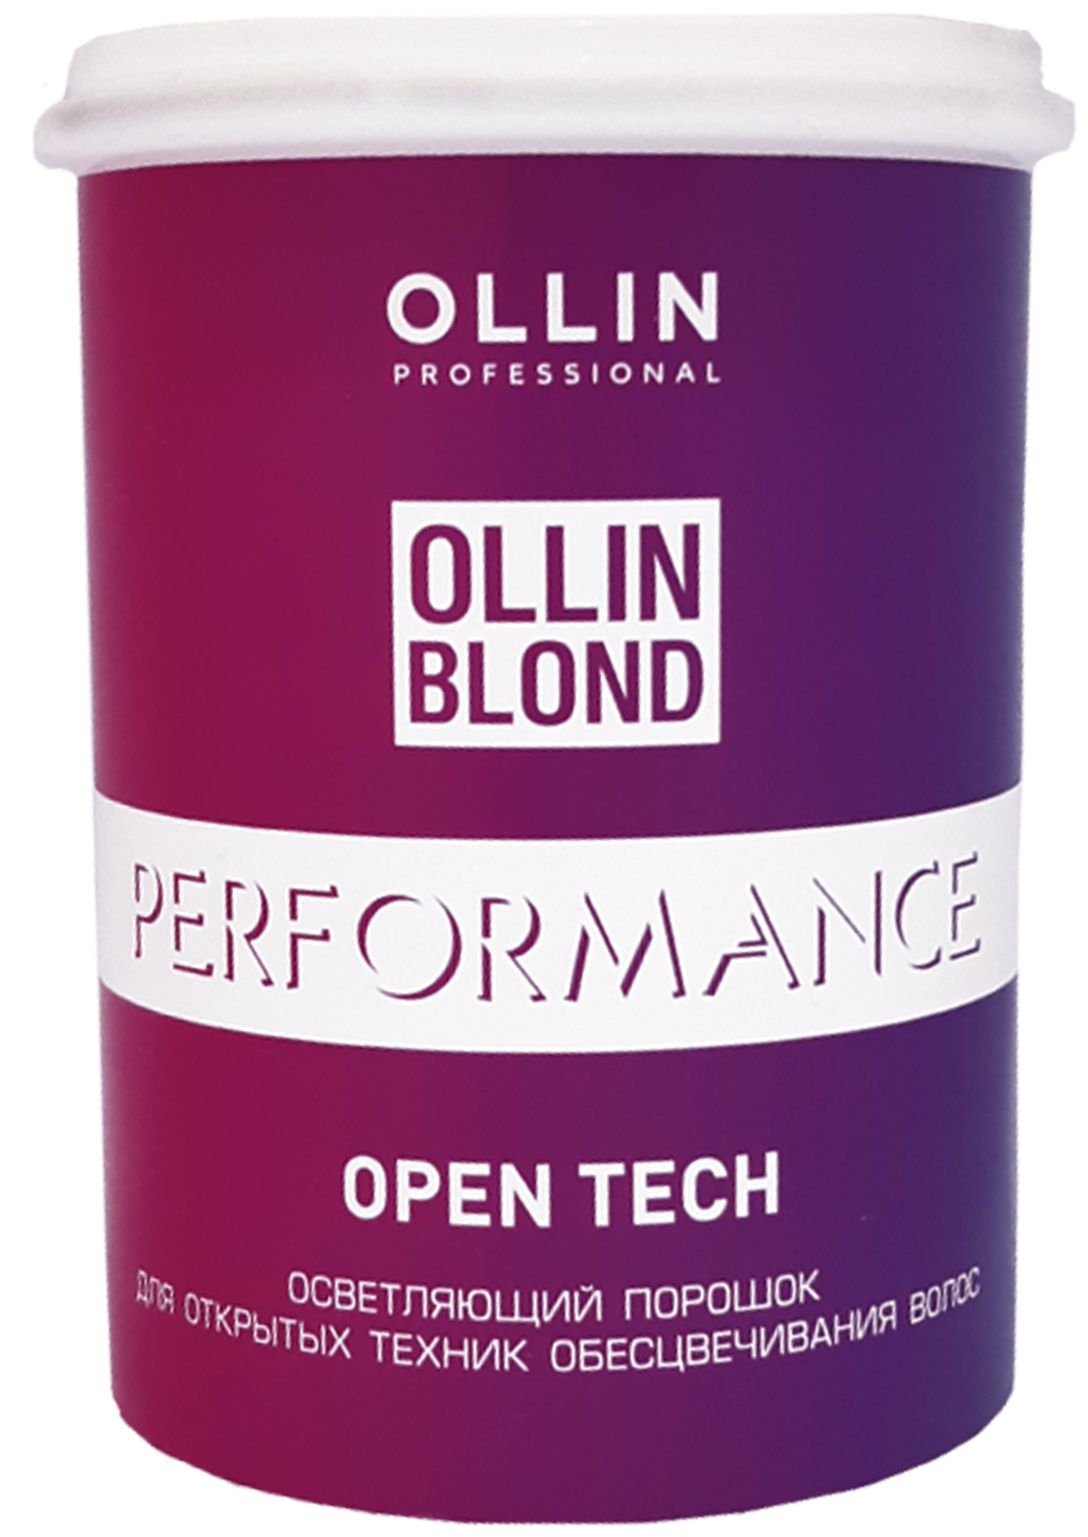 Осветляющий порошок для открытых техник обесцвечивания волос Ollin Blond Performance Open Tech 500г